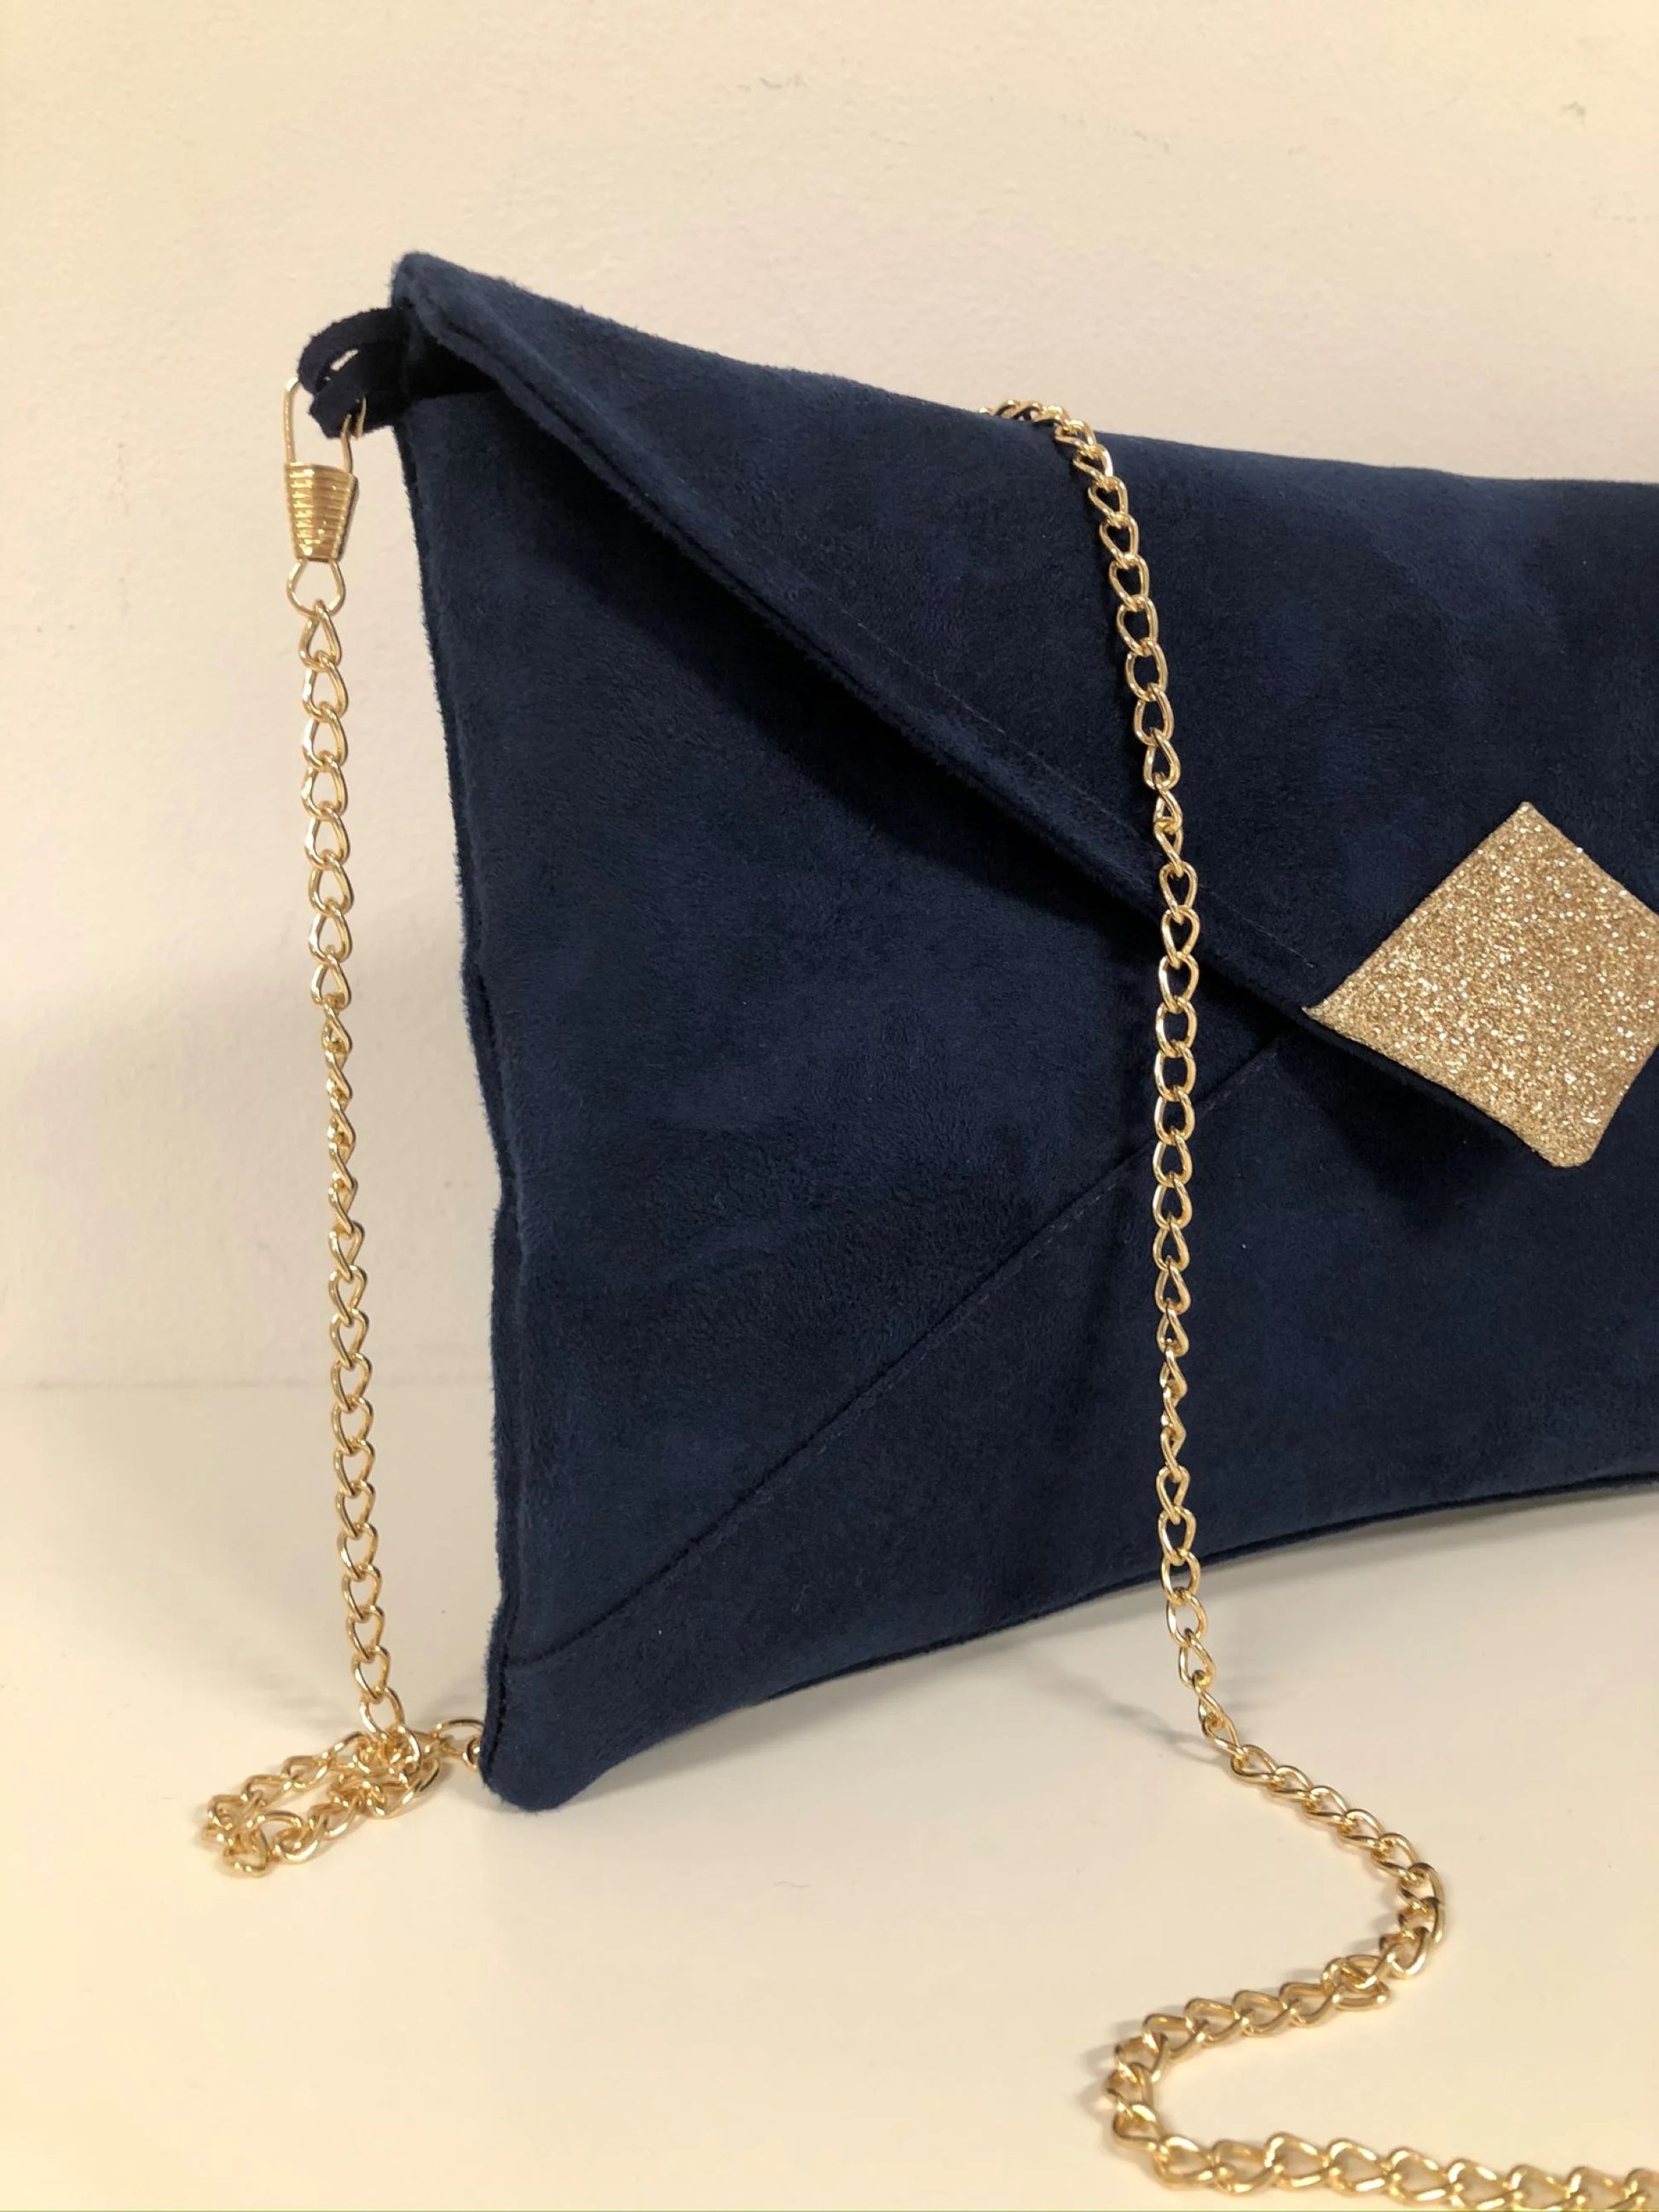 La chainette dorée amovible du sac pochette Isa bleu marine à paillettes dorées.